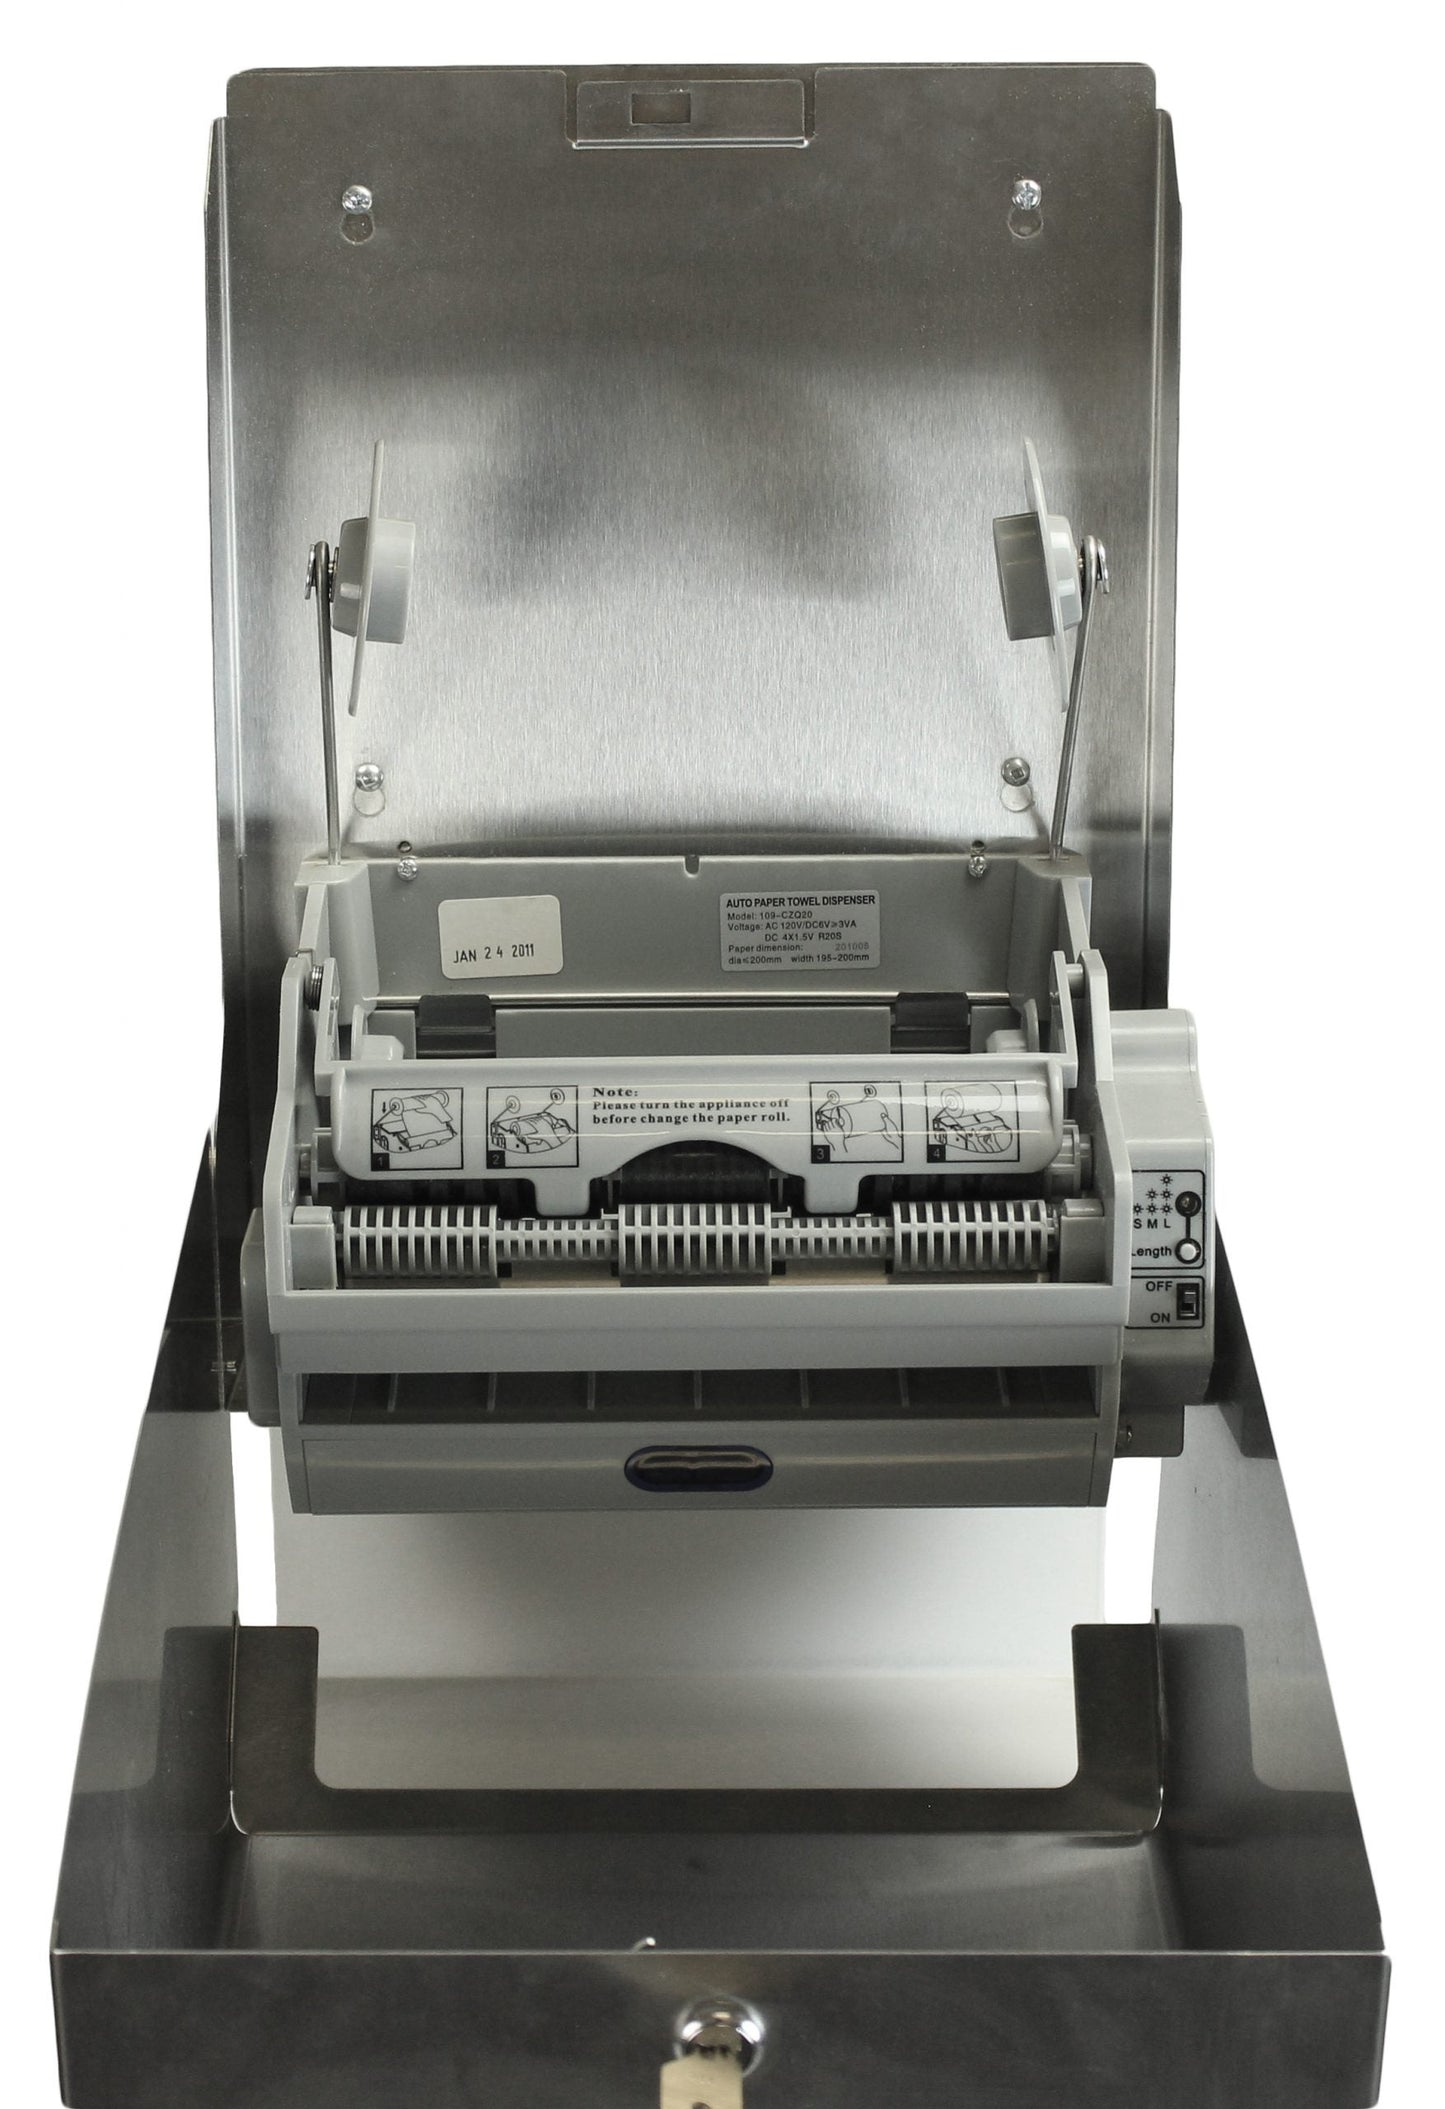 Distributeur de papier à main automatique Frost 109-70S en acier inoxydable